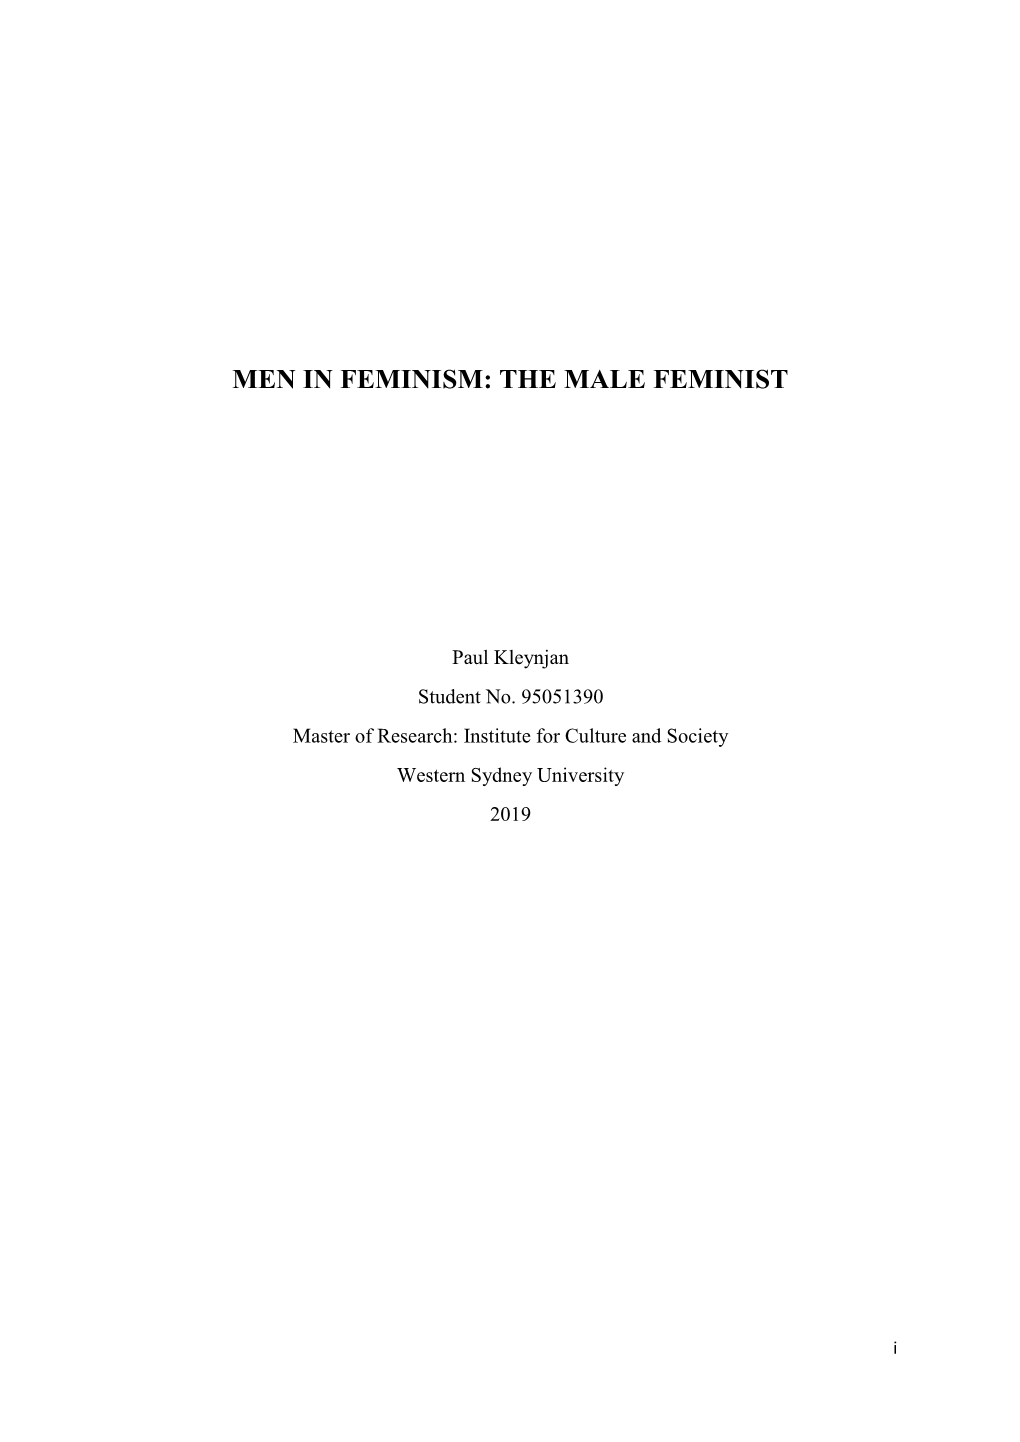 Men in Feminism: the Male Feminist